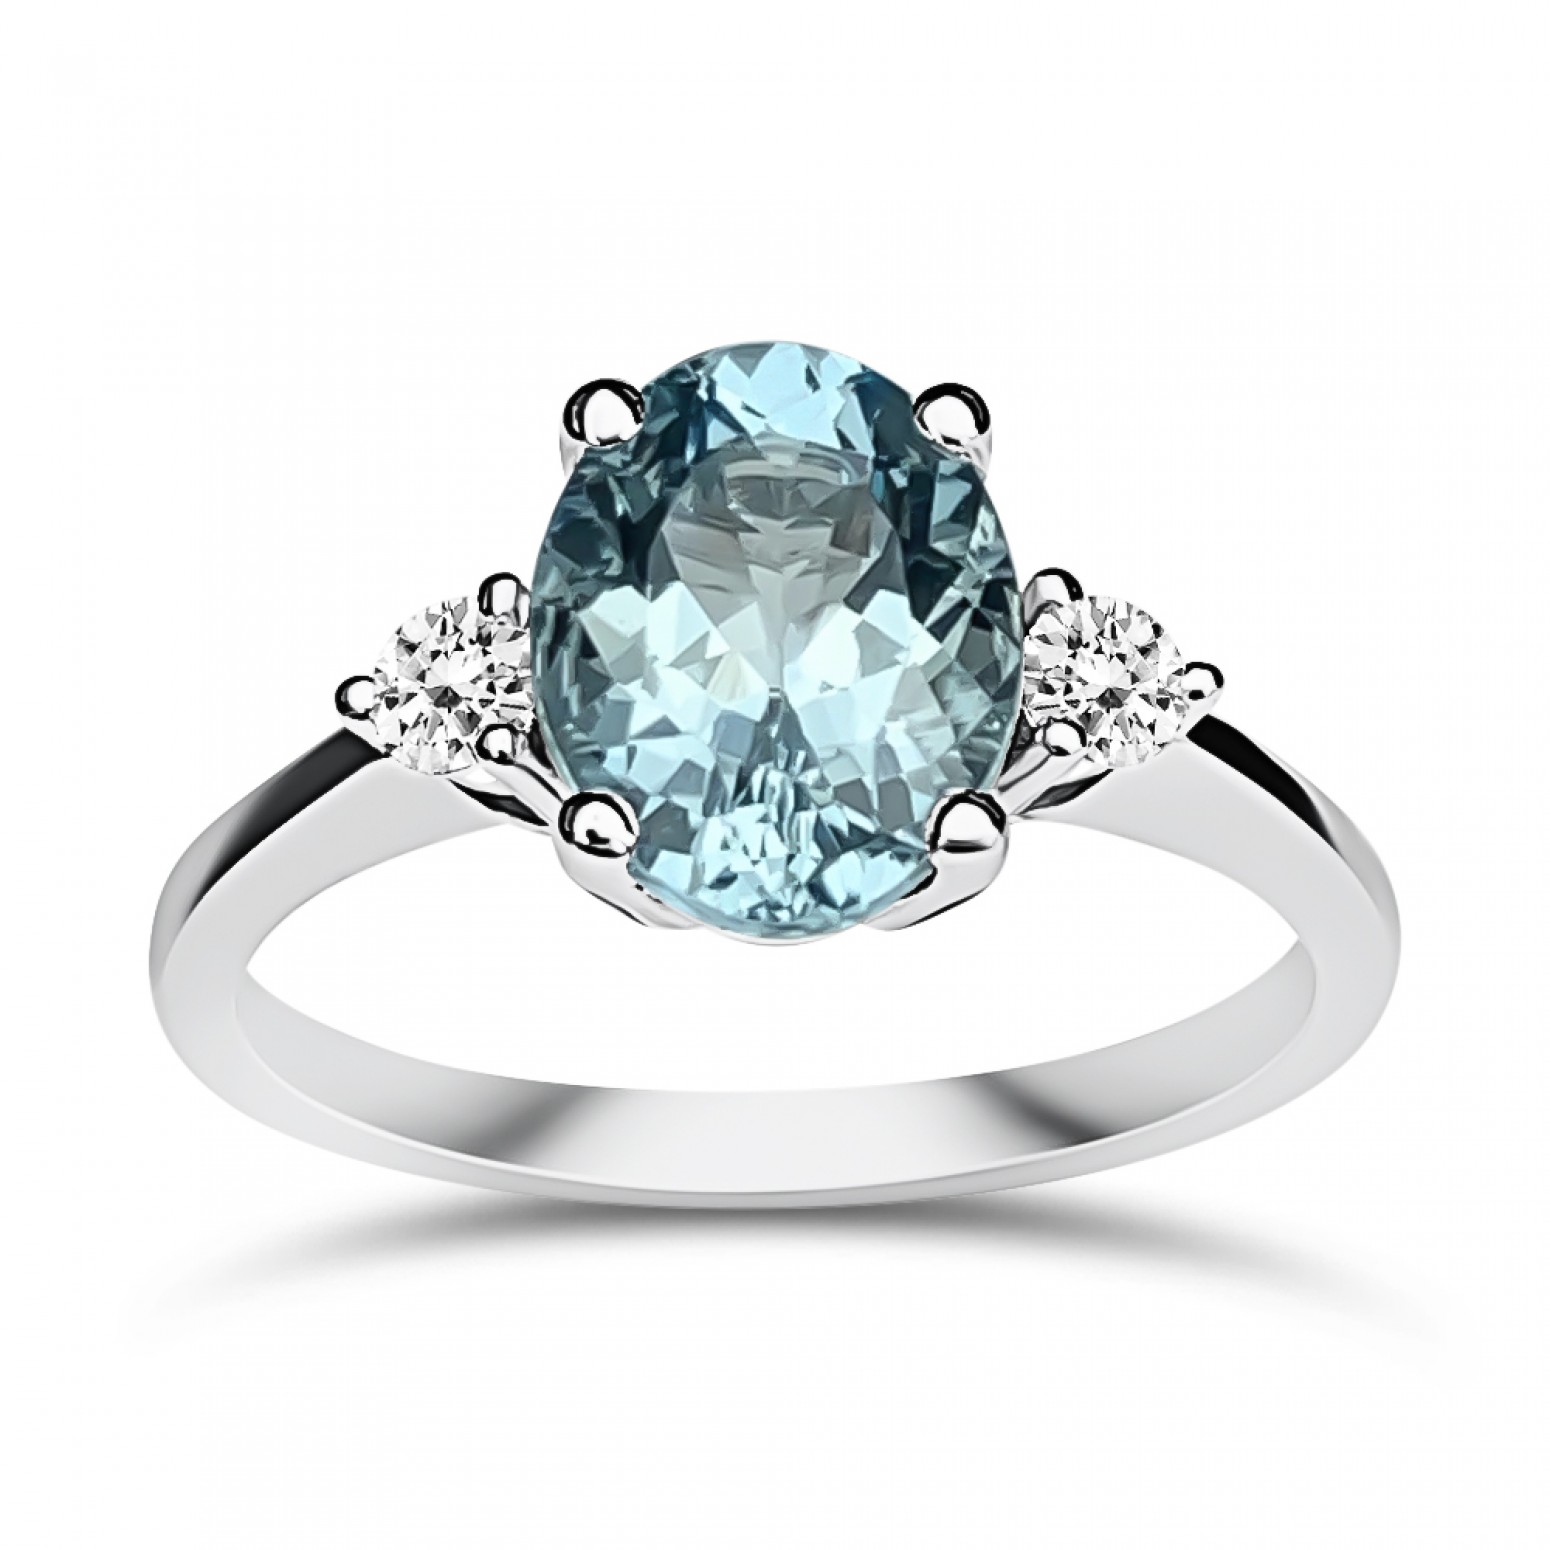 Μονόπετρο δαχτυλίδι Κ18 λευκόχρυσο με ακουαμαρίνα 1.66ct και διαμάντια VS1, H  da3876 ΔΑΧΤΥΛΙΔΙΑ ΑΡΡΑΒΩΝΑ Κοσμηματα - chrilia.gr